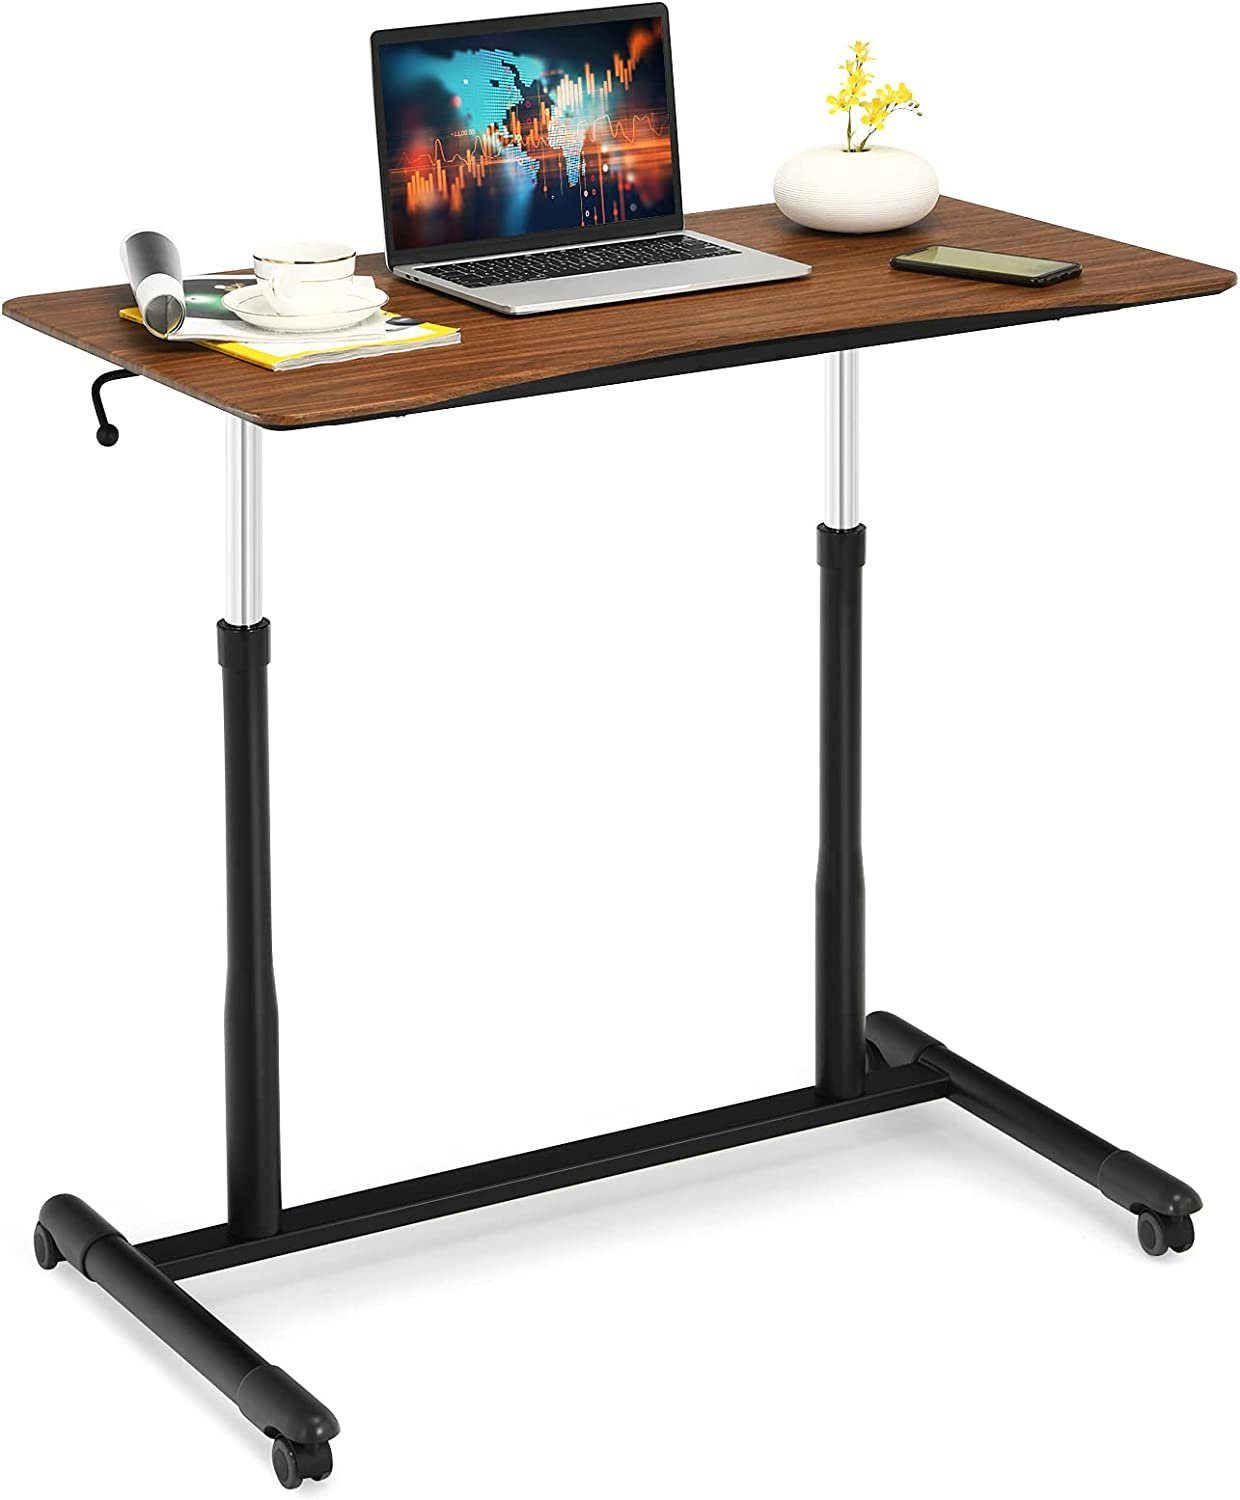 KOMFOTTEU Laptoptisch PC Tisch, mit Handkurbel, belastbar bis 30 kg braun